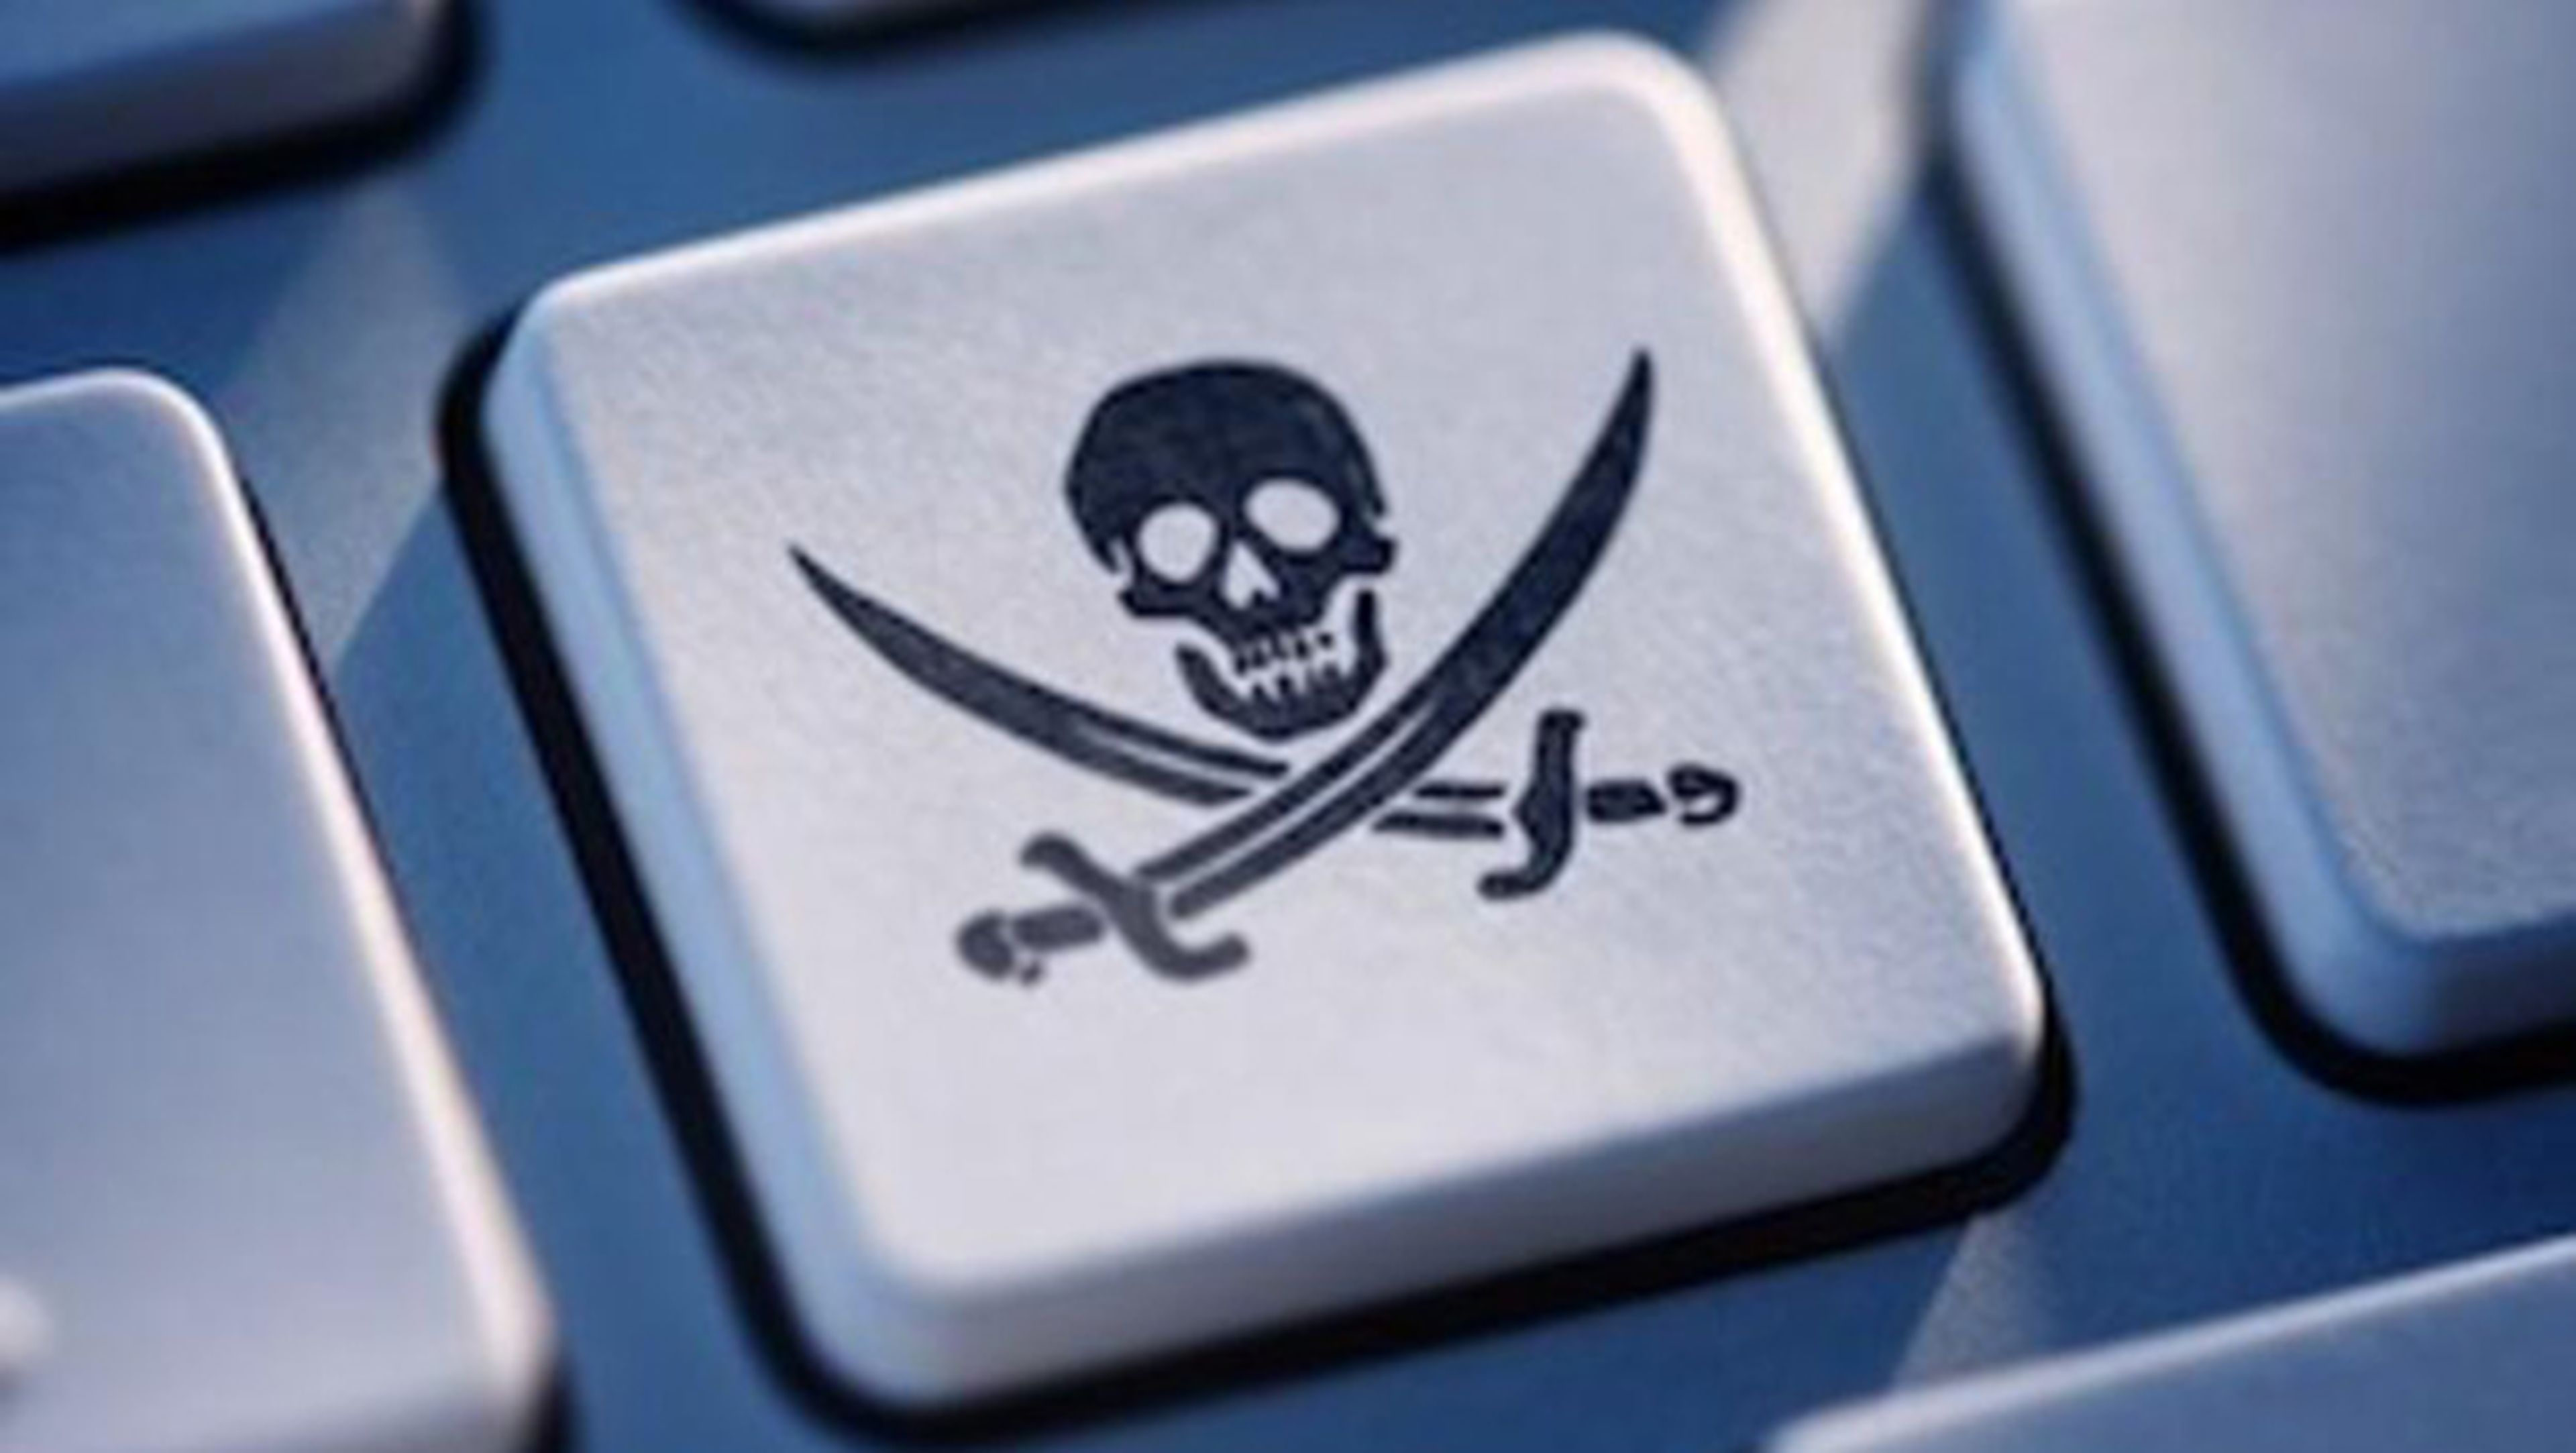 ¿Los sistemas operativos deberían impedir la piratería?